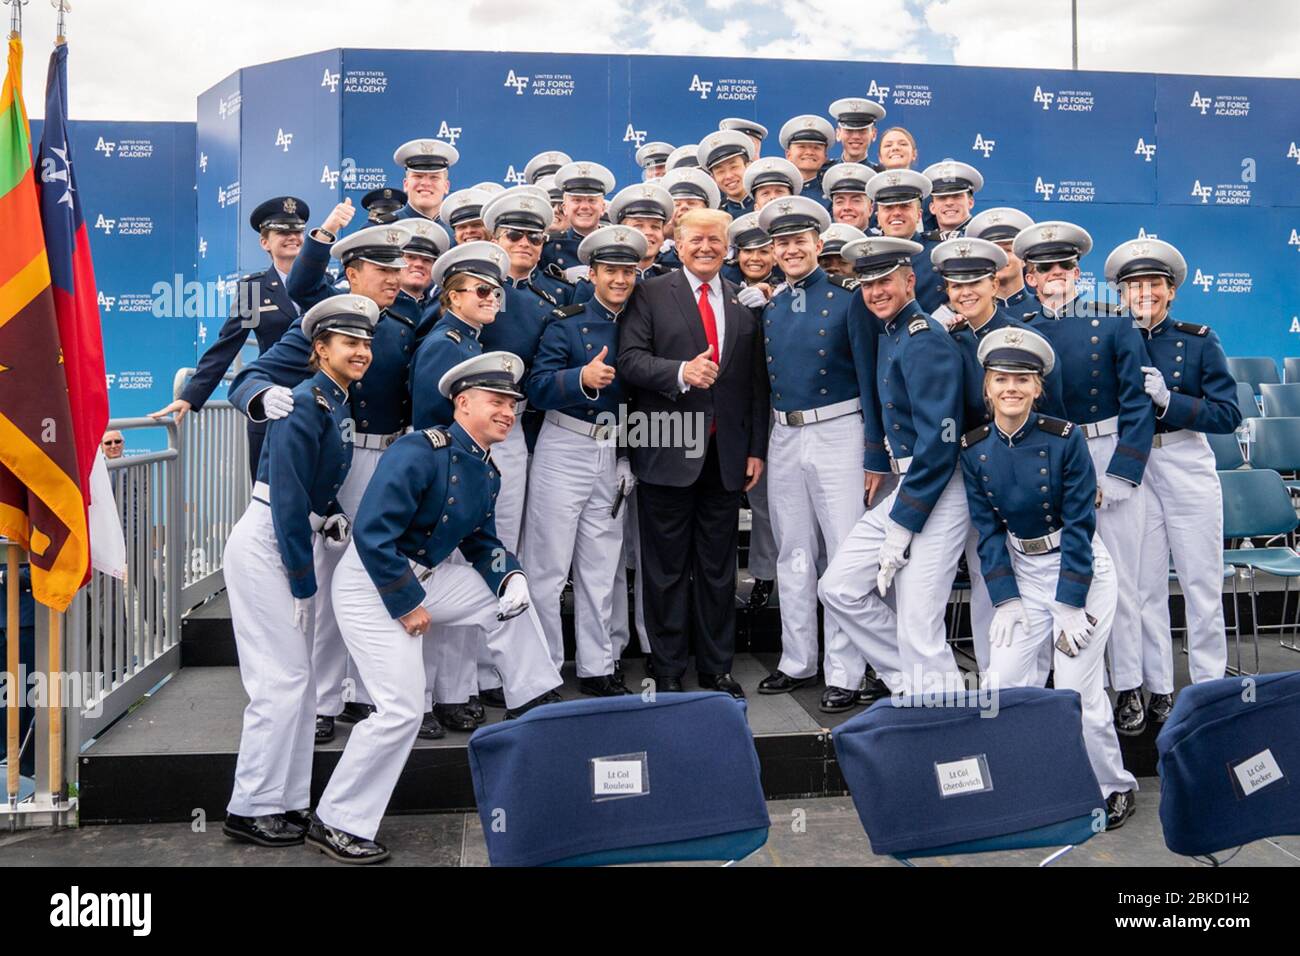 Il presidente Donald J. Trump si pone per una foto con alcuni laureati dopo la cerimonia di laurea dell'Accademia dell'aeronautica statunitense del 2019 Giovedì 30 maggio 3019, allo stadio U.S. Air Force Academy-Falcon a Colorado Springs, Cool. La cerimonia di laurea dell'Accademia dell'aeronautica degli Stati Uniti Foto Stock